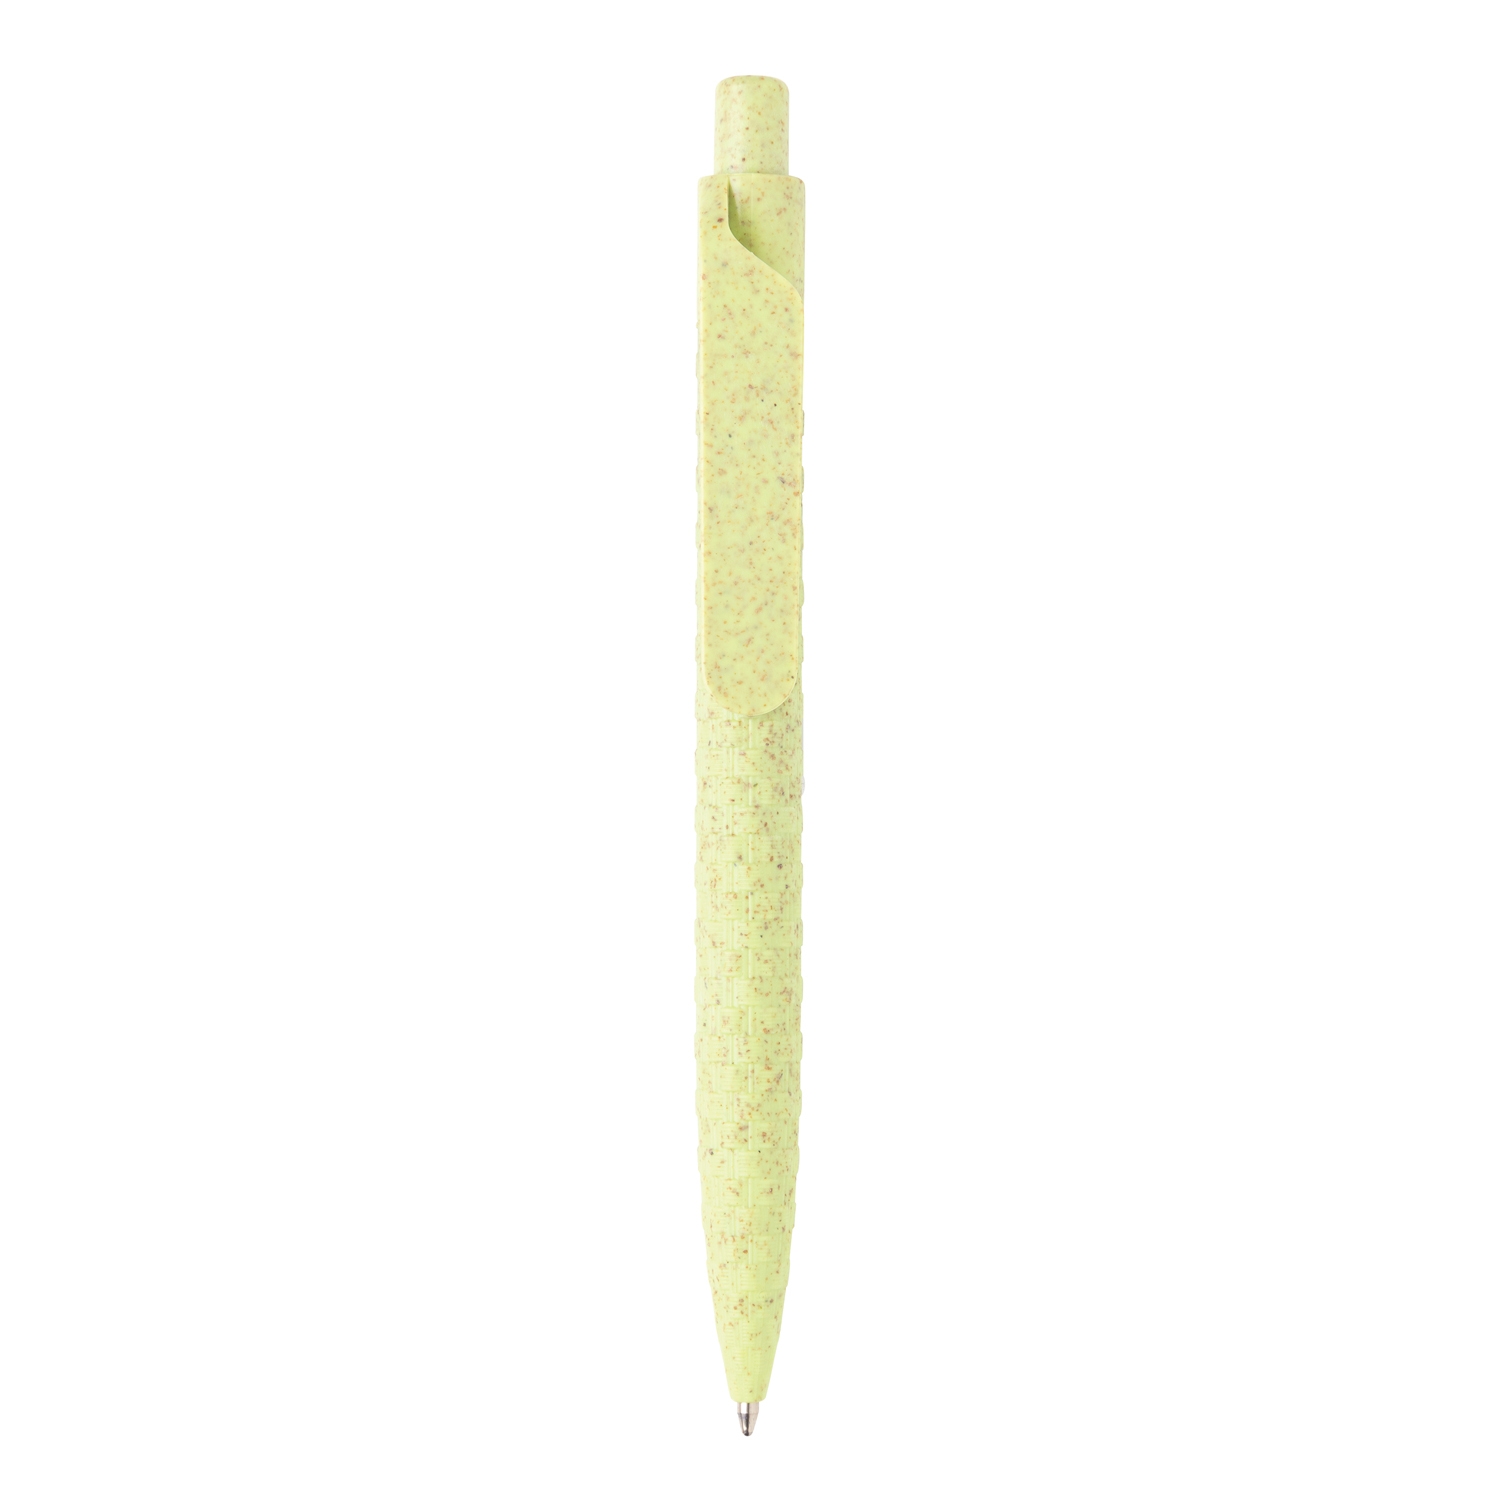 Ручка Wheat Straw, зеленый, волокно пшеничной соломы; abs